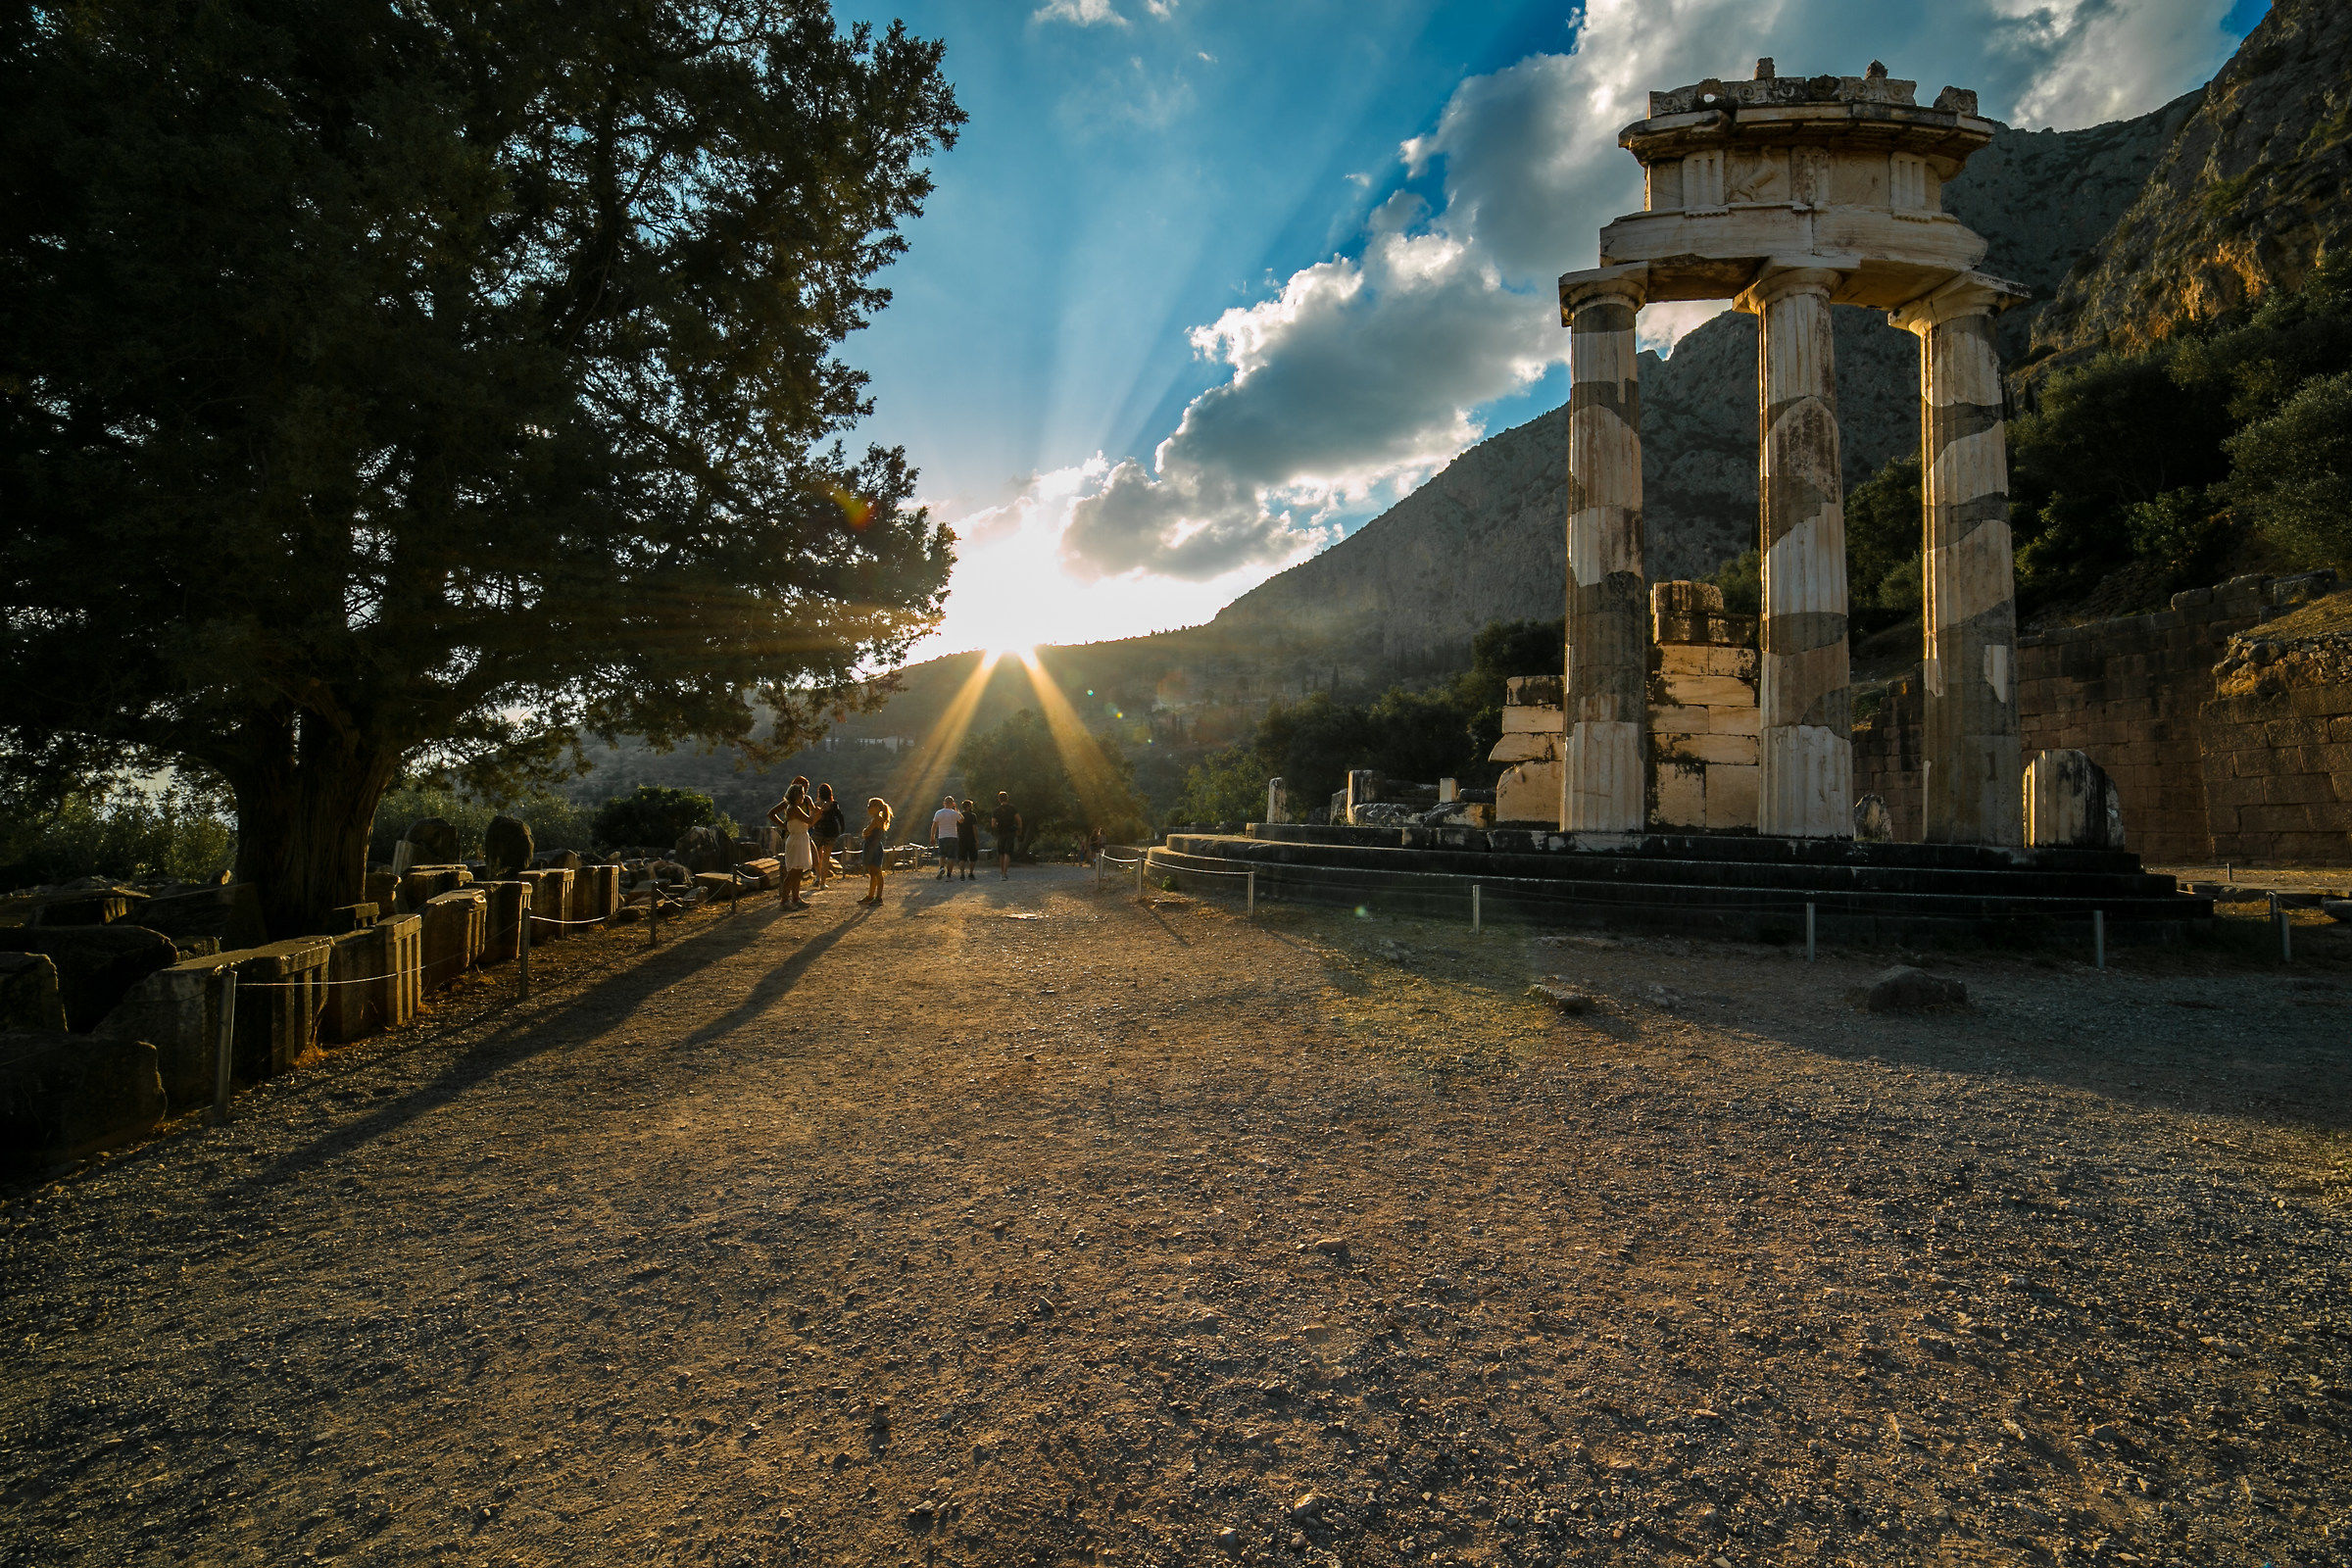 Tempio di Venere, Delphi...